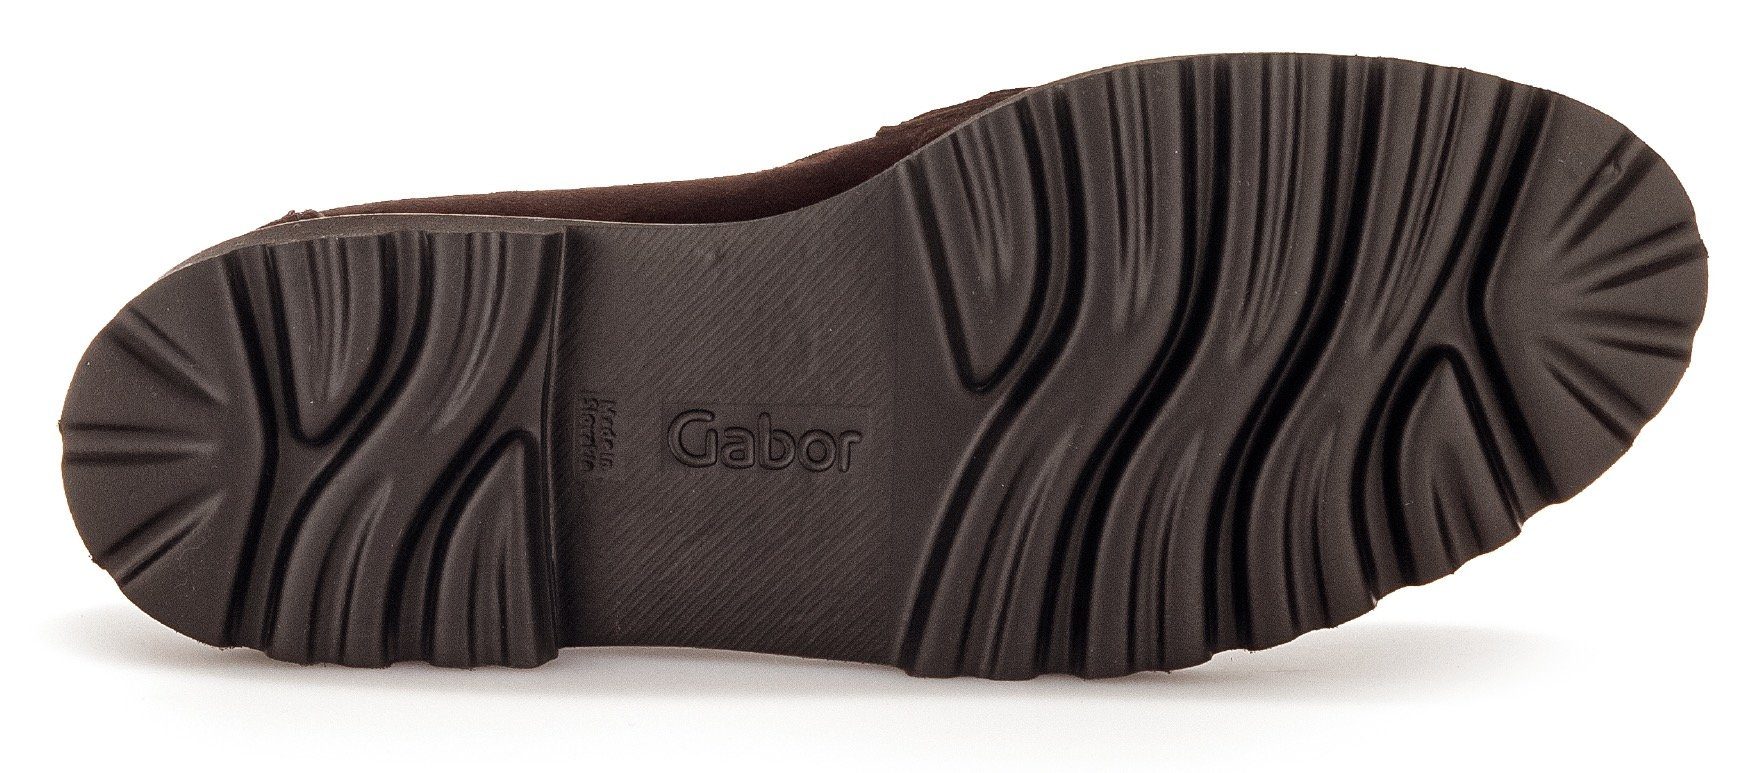 Best dunkelbraun-goldfarben Slipper mit Gabor Fitting-Ausstattung